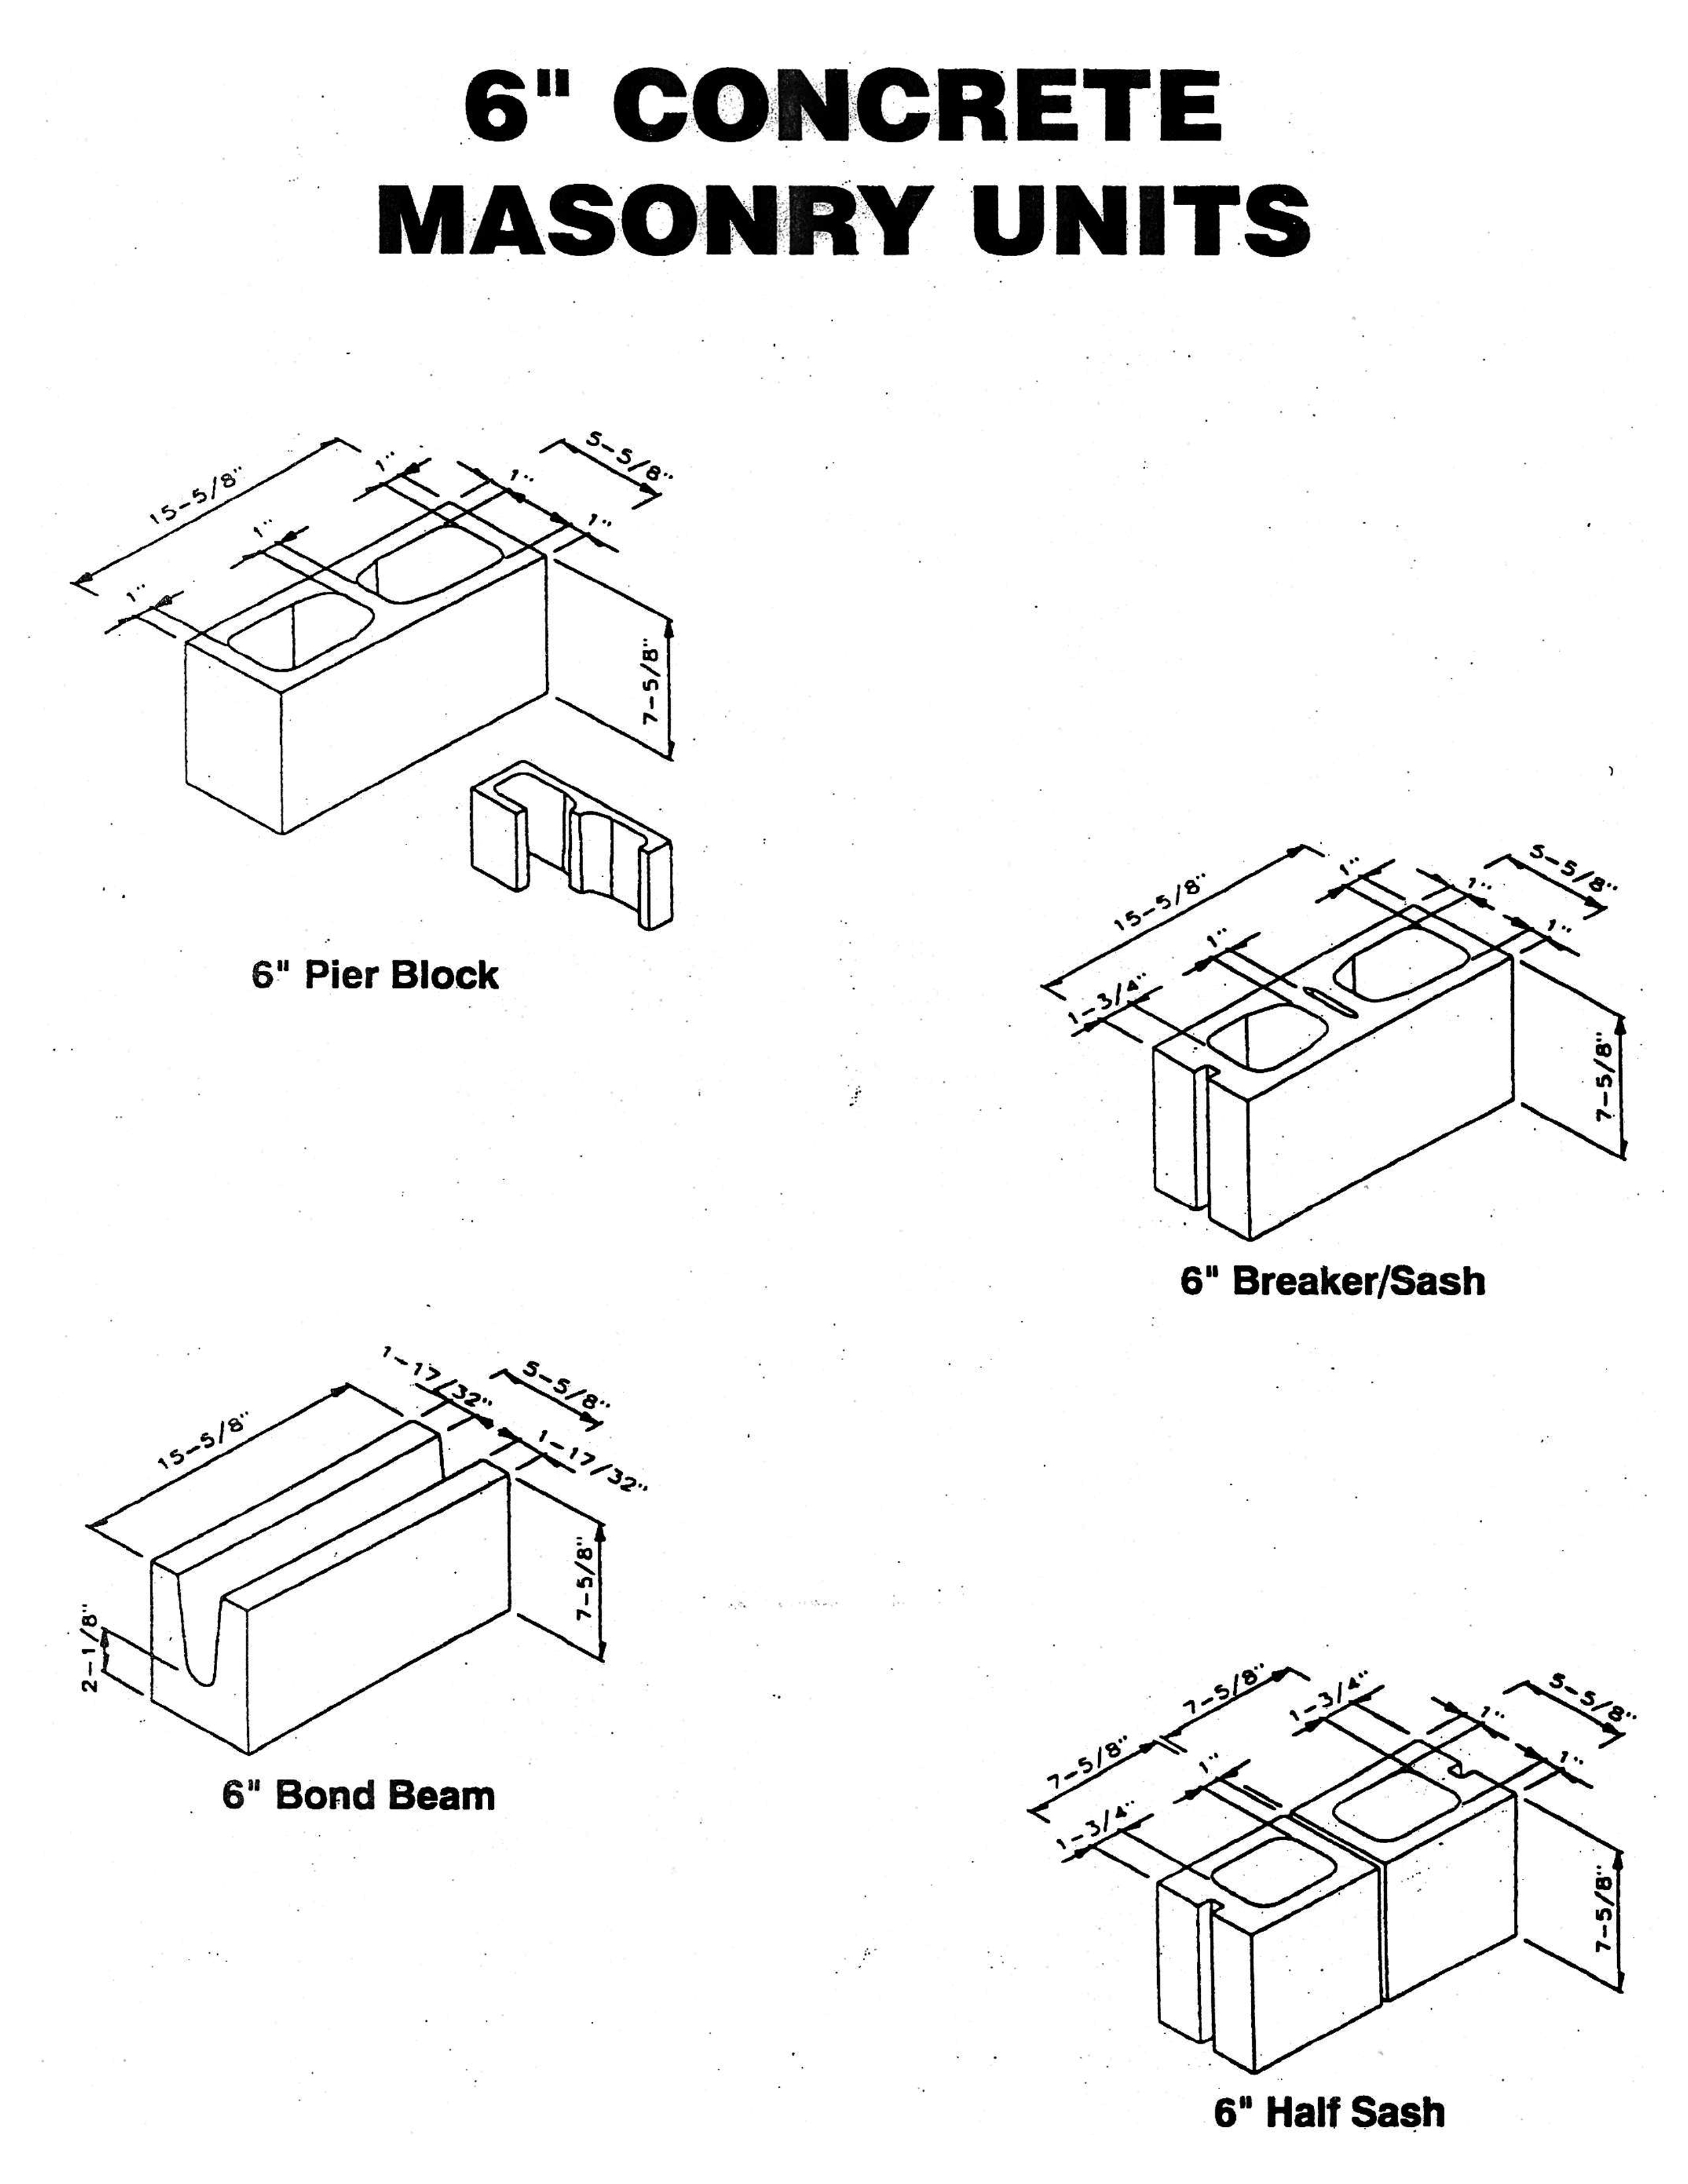 6-concrete-masonry-unit-montfort-group